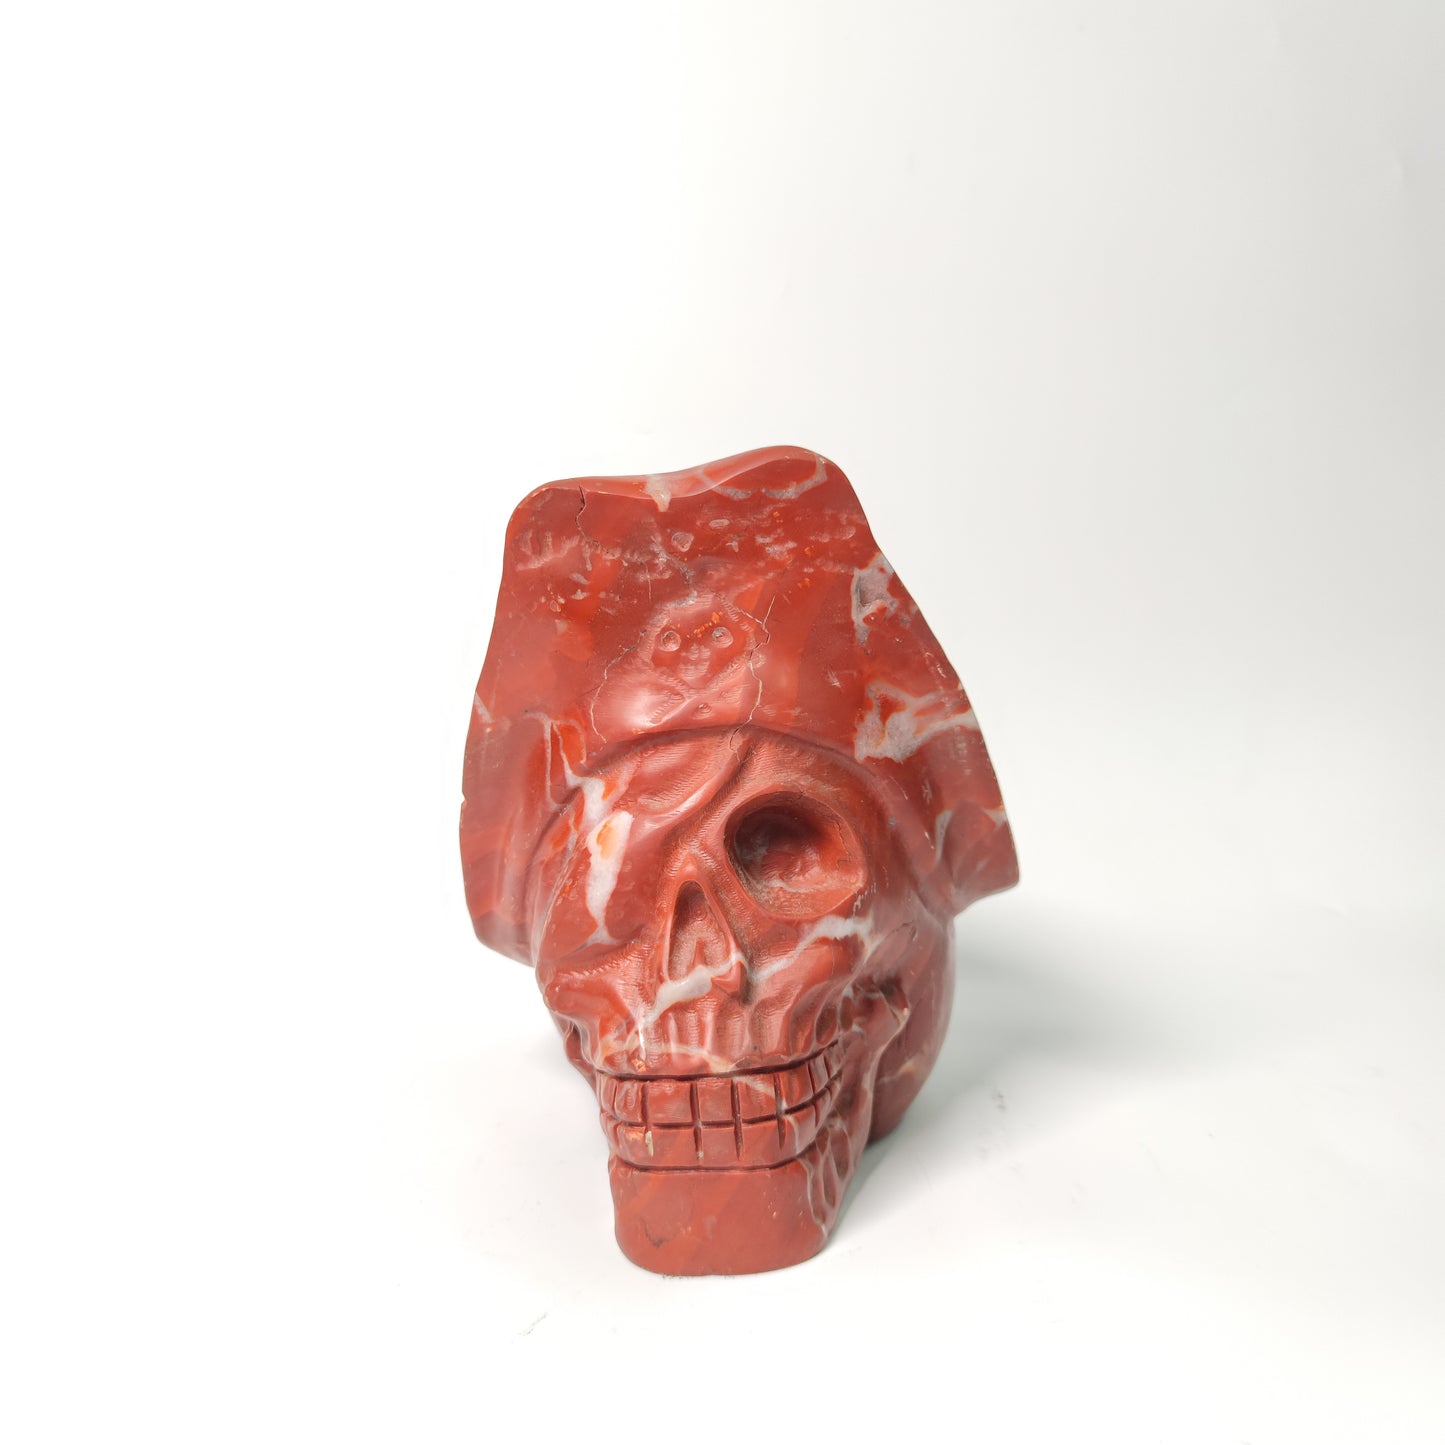 Red calcite skull